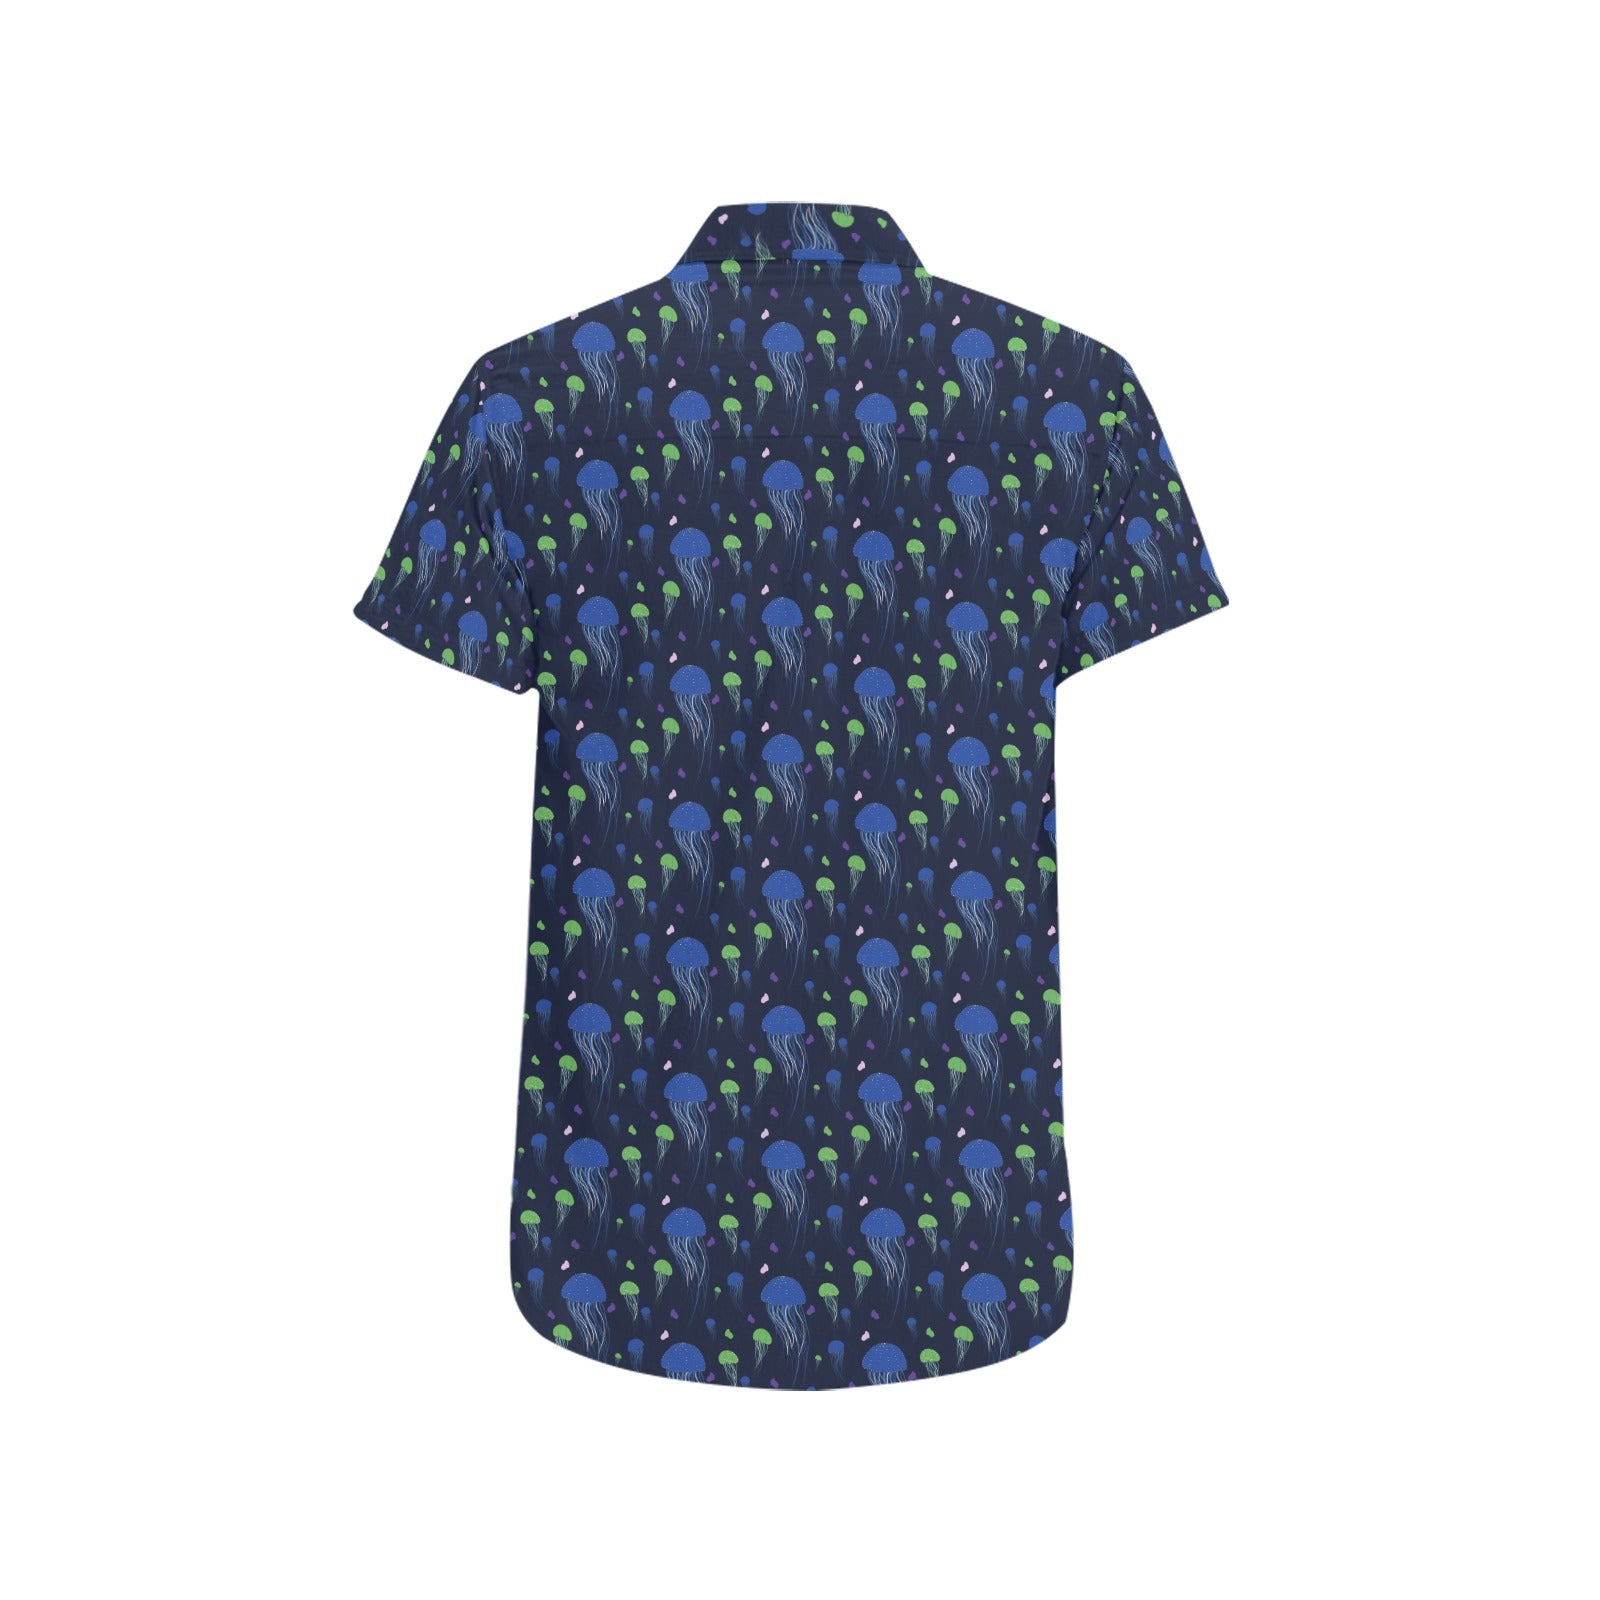 Blue Ocean Short Sleeve Men Button up Shirt, Beach Blue Sea Shells